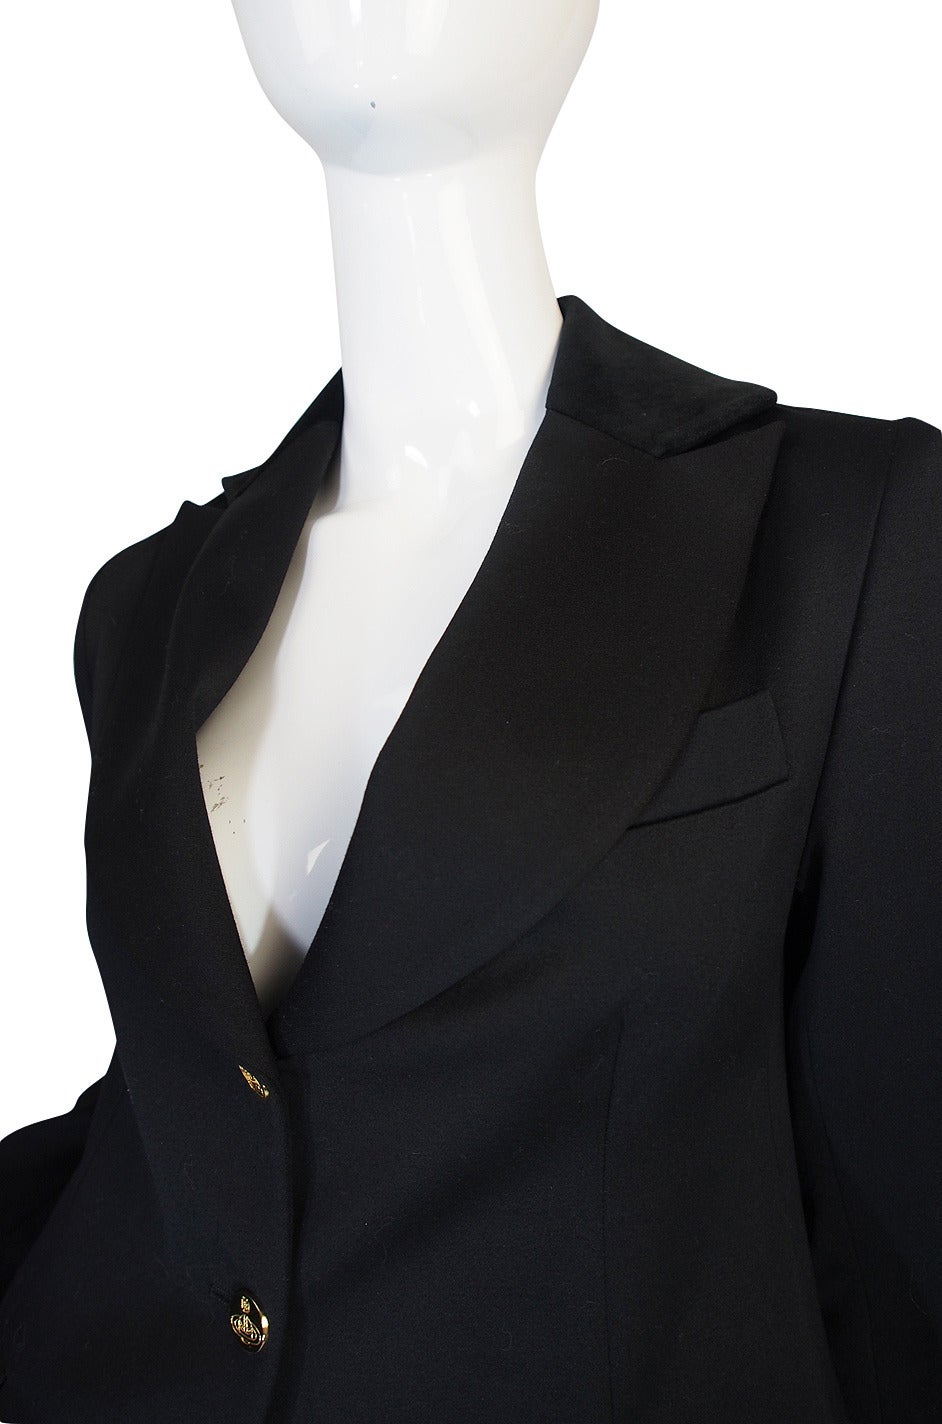 Rare 1990s Vivienne Westwood Black Tuxedo Suit 4